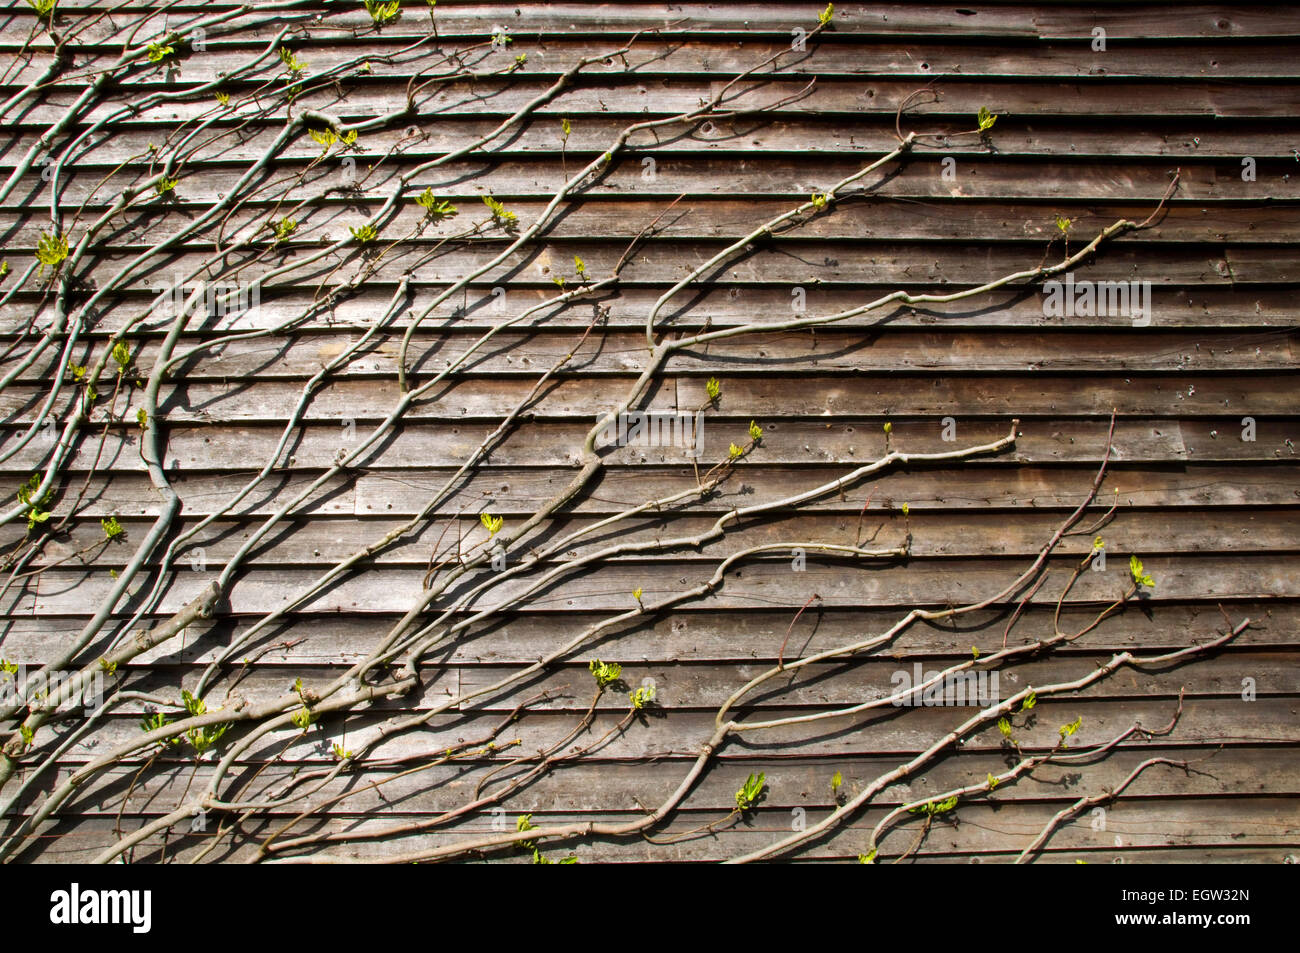 Les pousses vertes sur une vigne rampante contre un mur lambrissé de bois Banque D'Images